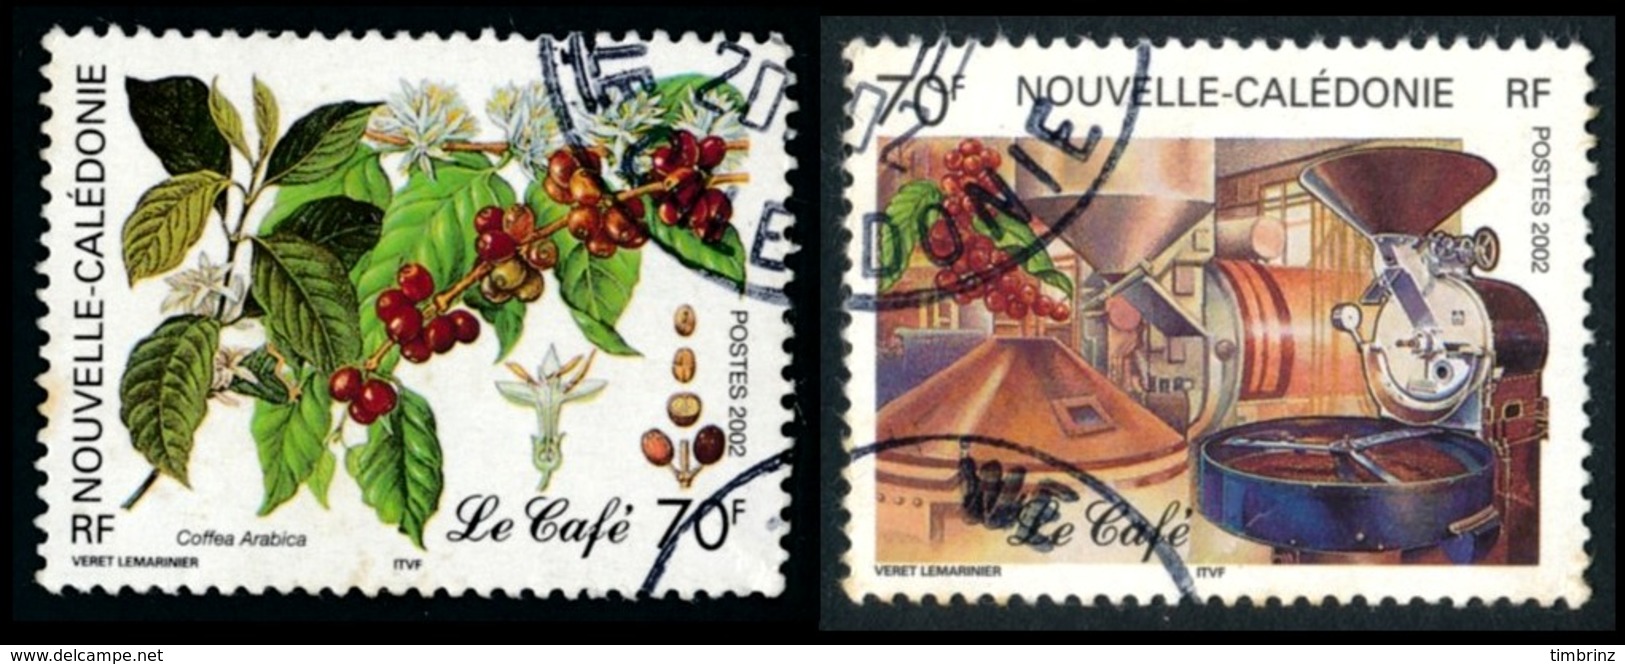 NOUV.-CALEDONIE 2002 - Yv. 869 Et 870 Obl.   Cote= 2,40 EUR - Caféier & Usine, Torréfacteur (2 Val.)  ..Réf.NCE24540 - Oblitérés